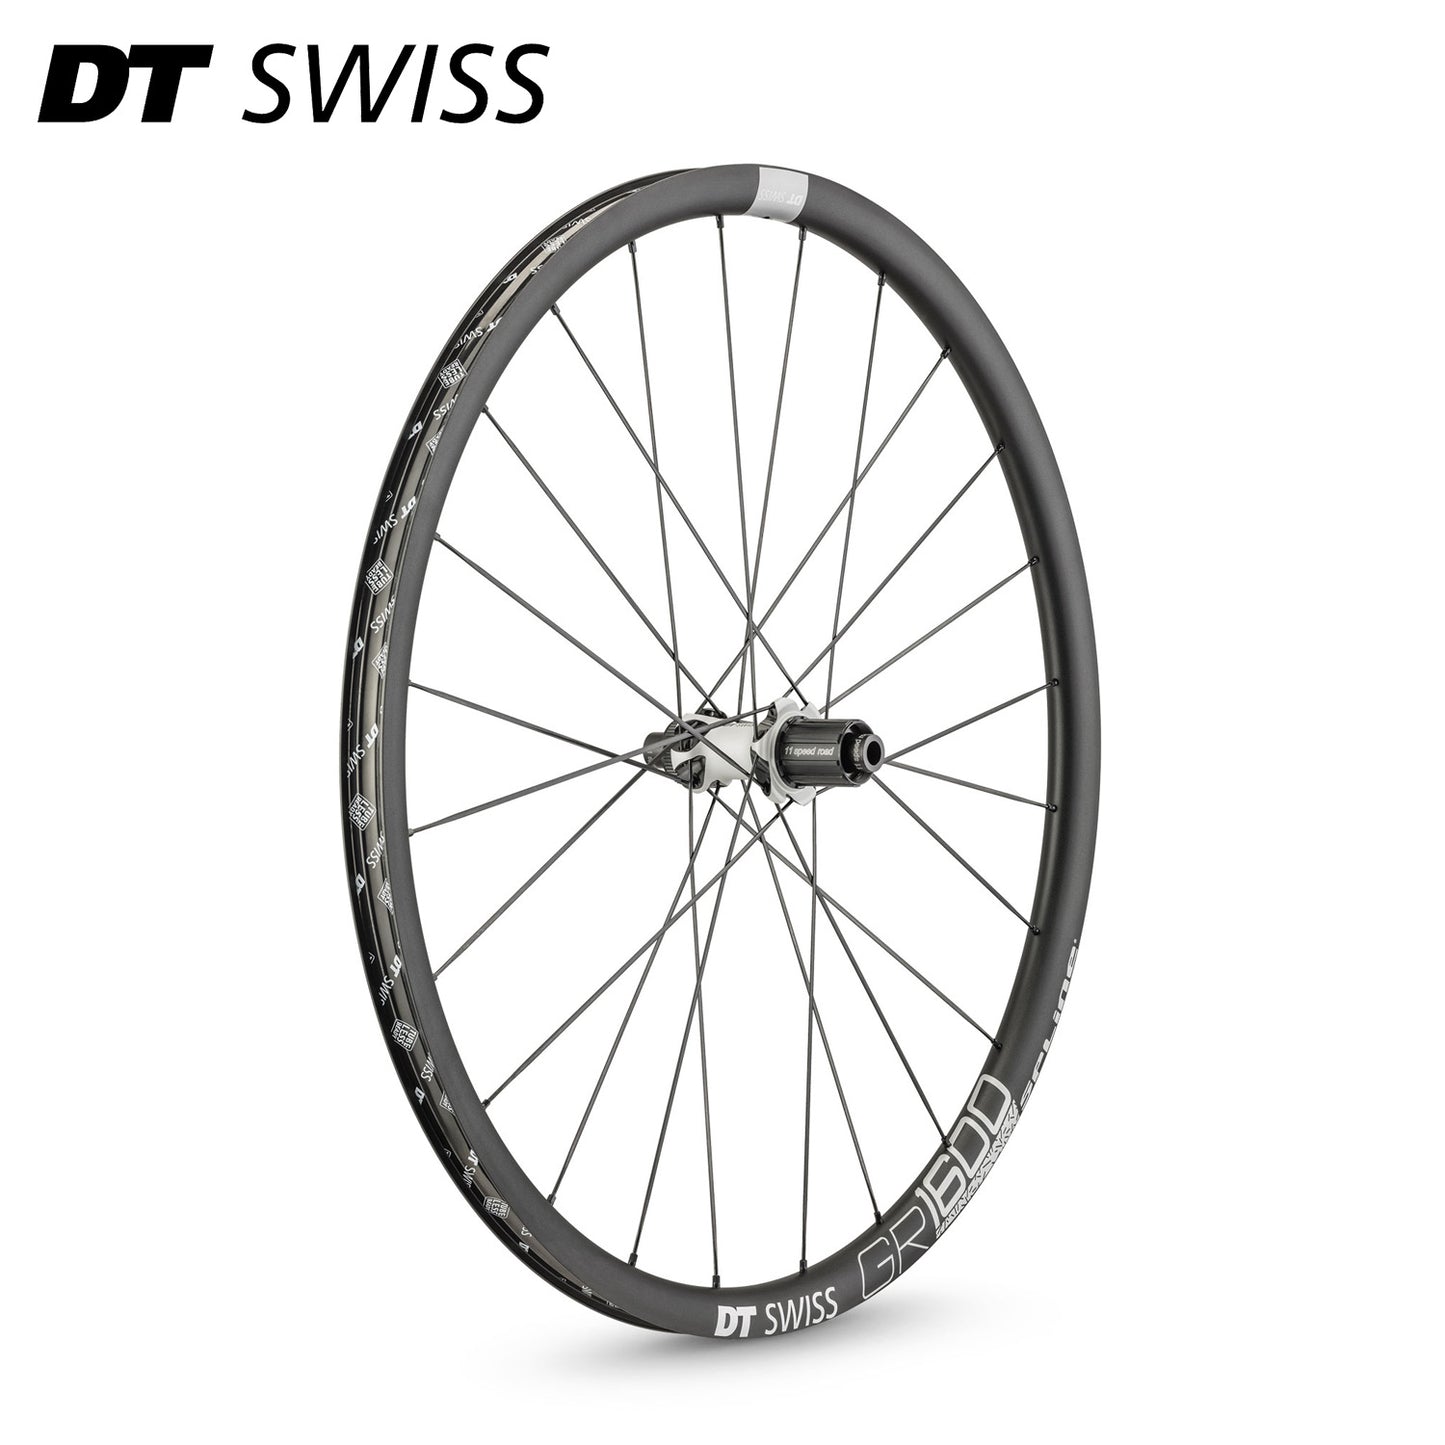 DT Swiss GR 1600 Spline 700c Gravel Bike Wheelset Front and Rear